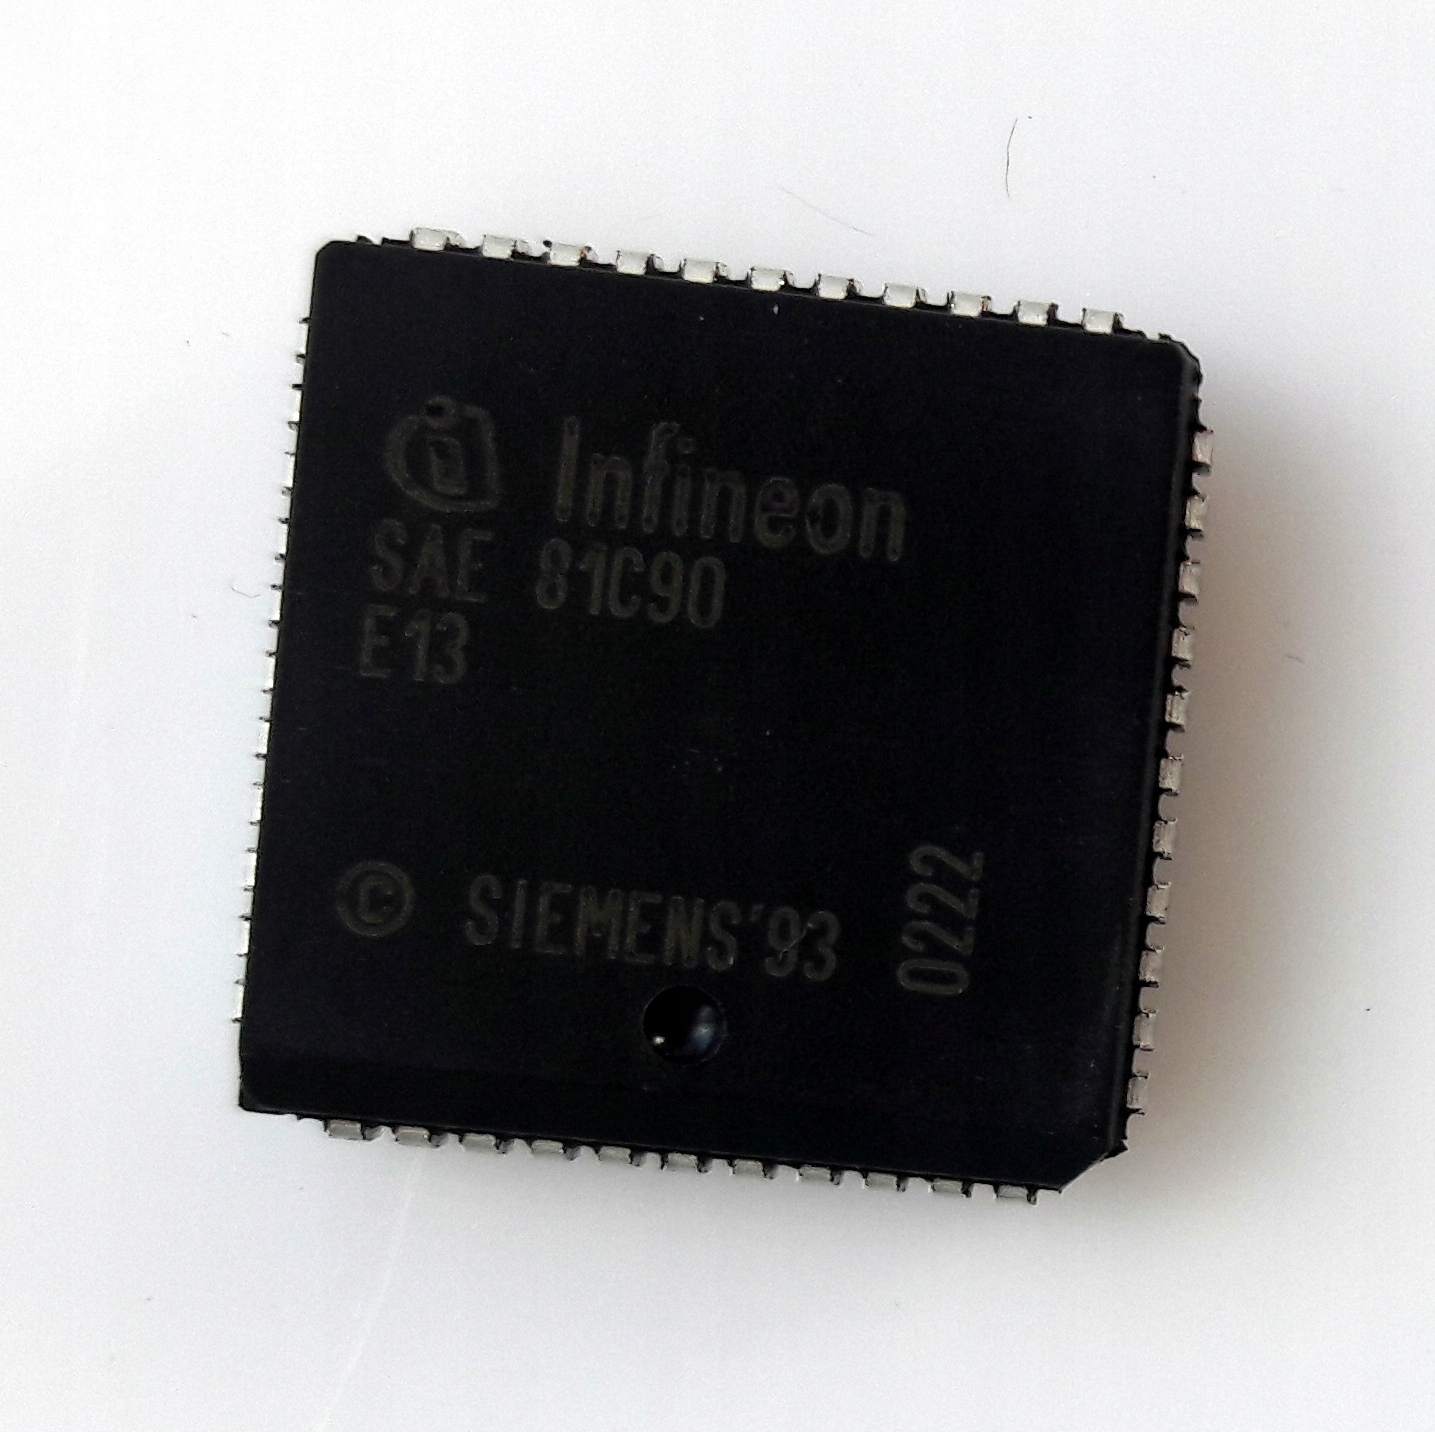 Samostatný ovládač Infineon SAE81C90 s možnosťou úplného CAN